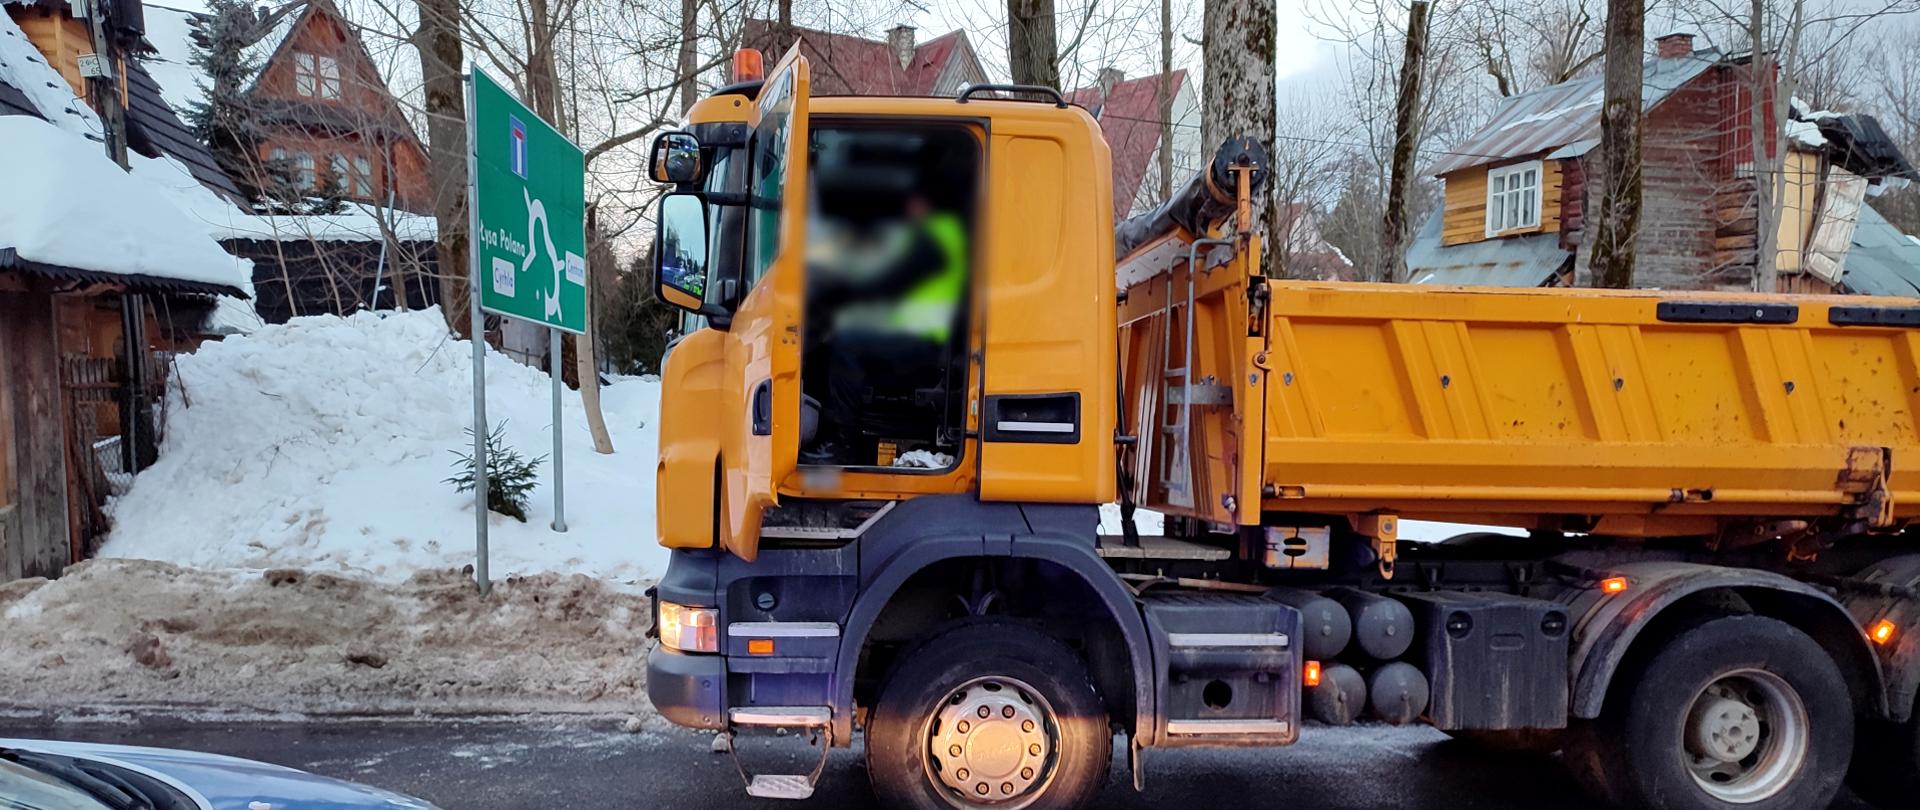 Inspektorzy małopolskiej Inspekcji Transportu Drogowego pobrali dane z tachografu oraz karty kierowcy ciężarówki. Na zdjęciu miejsce tragedii. Na pierwszym planie pojazd ciężarowy koloru pomarańczowego. Po lewej policyjny radiowóz.